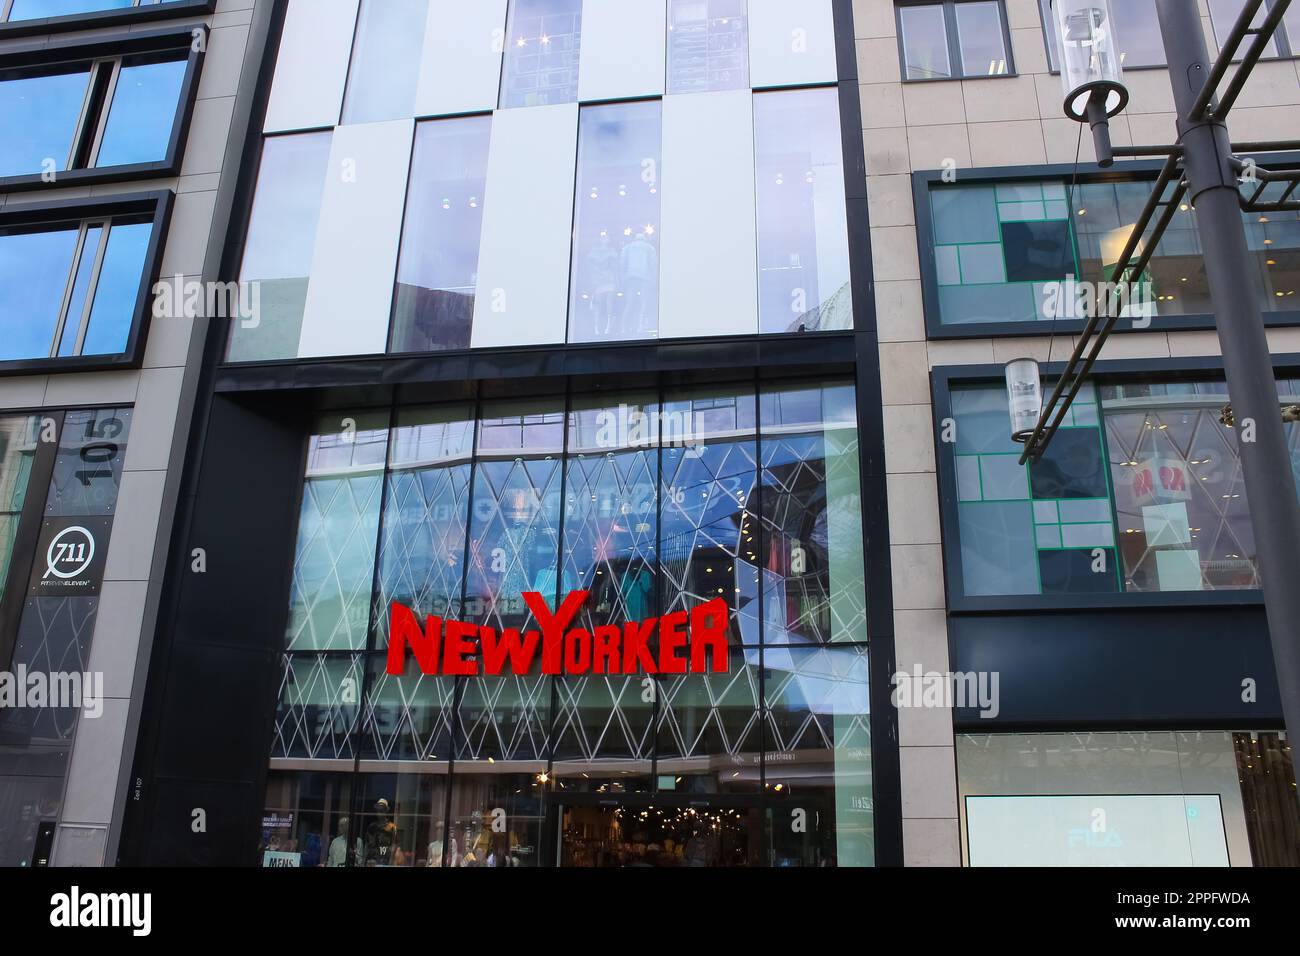 Francfort-sur-le-main, Allemagne - 20 avril 2022 : magasin New-yorkais sur la rue Zeil Banque D'Images